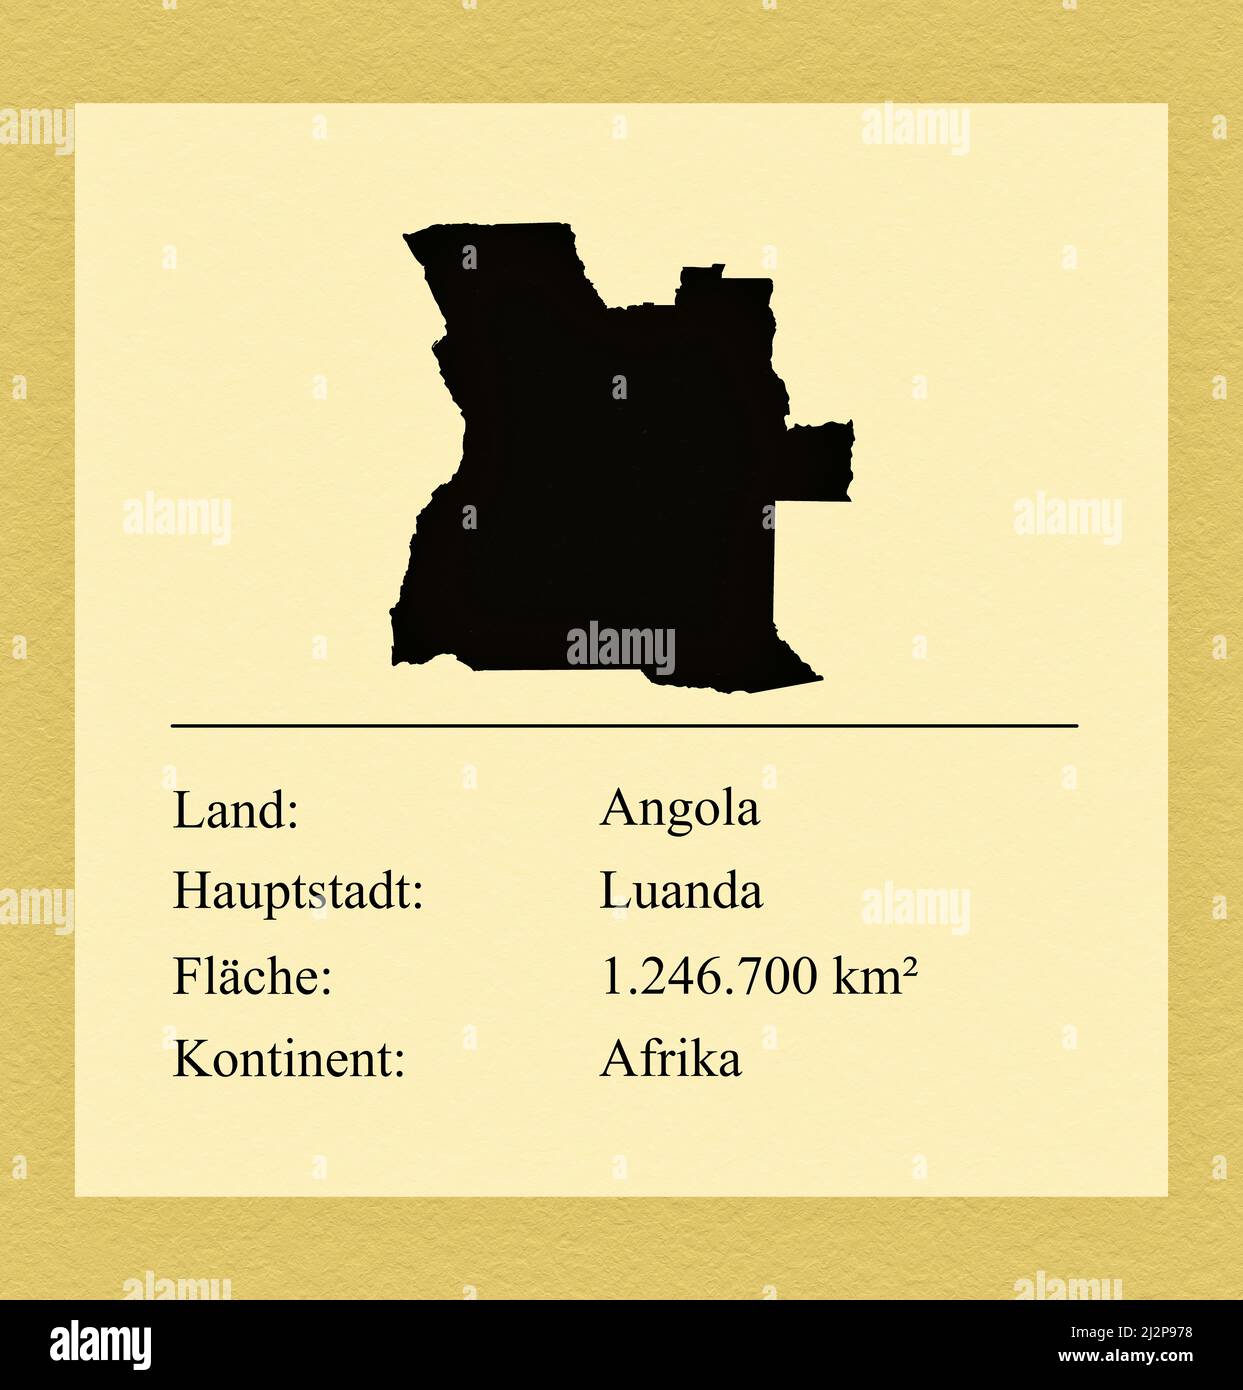 Umrisse des Landes Angola, darunter ein kleiner Steckbrief mit Ländernamen, Hauptstadt, Fläche und Kontinent Stock Photo